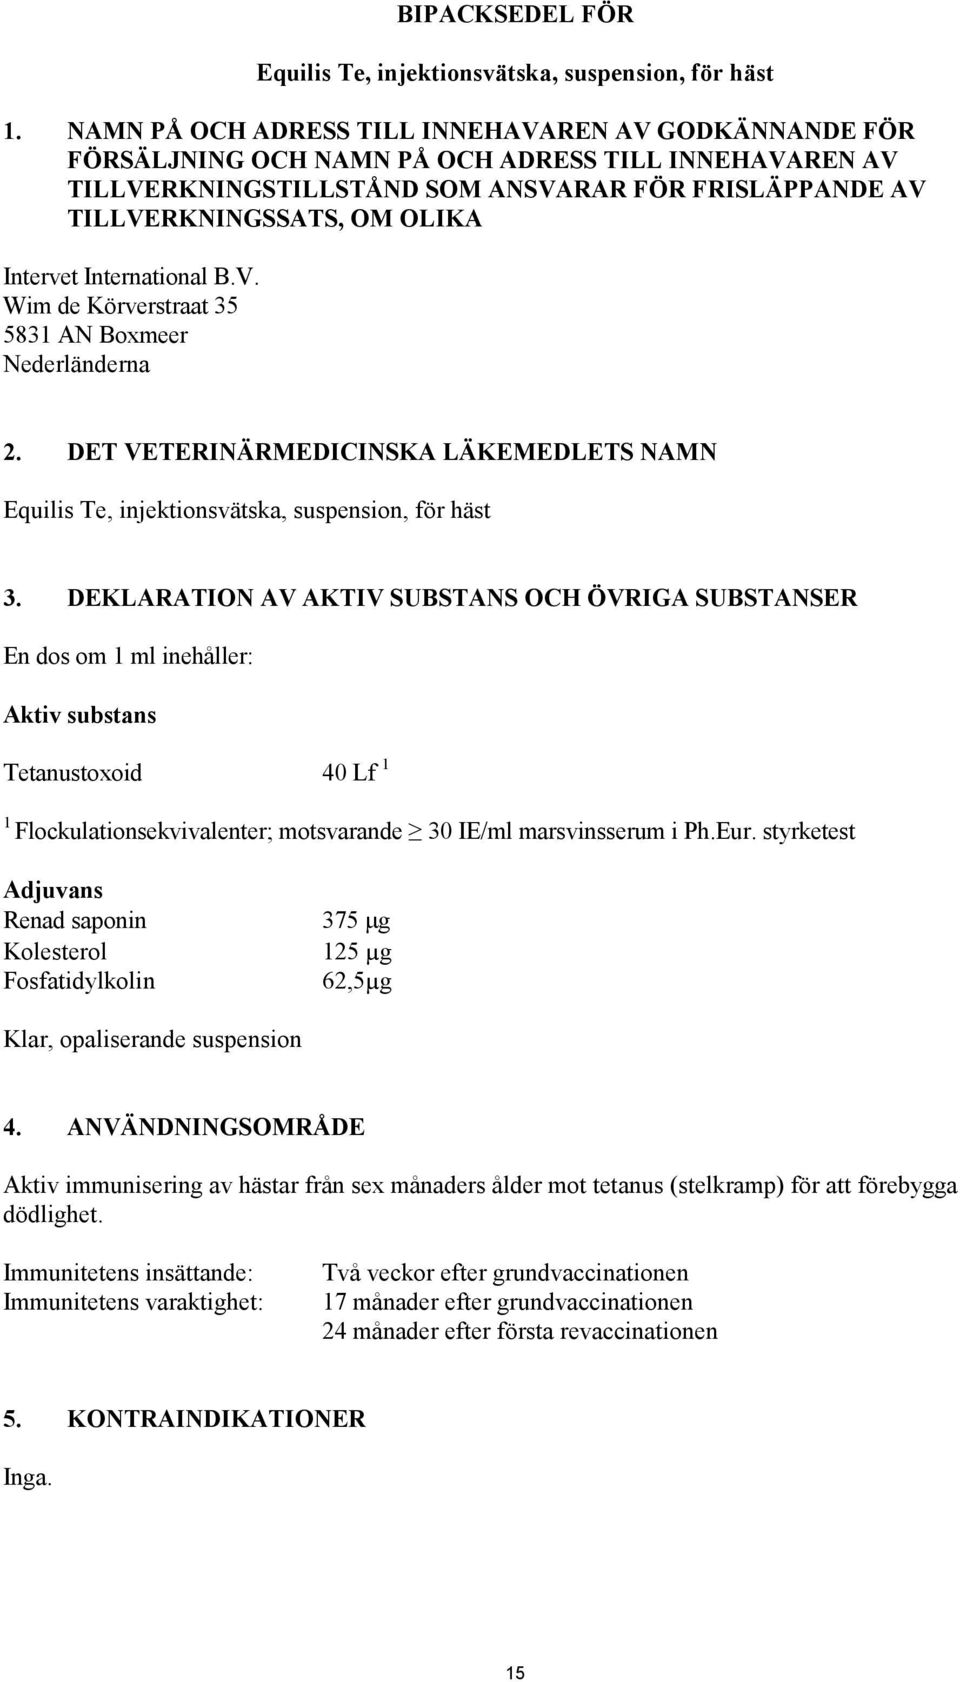 Intervet International B.V. Wim de Körverstraat 35 5831 AN Boxmeer Nederländerna 2. DET VETERINÄRMEDICINSKA LÄKEMEDLETS NAMN Equilis Te, injektionsvätska, suspension, för häst 3.